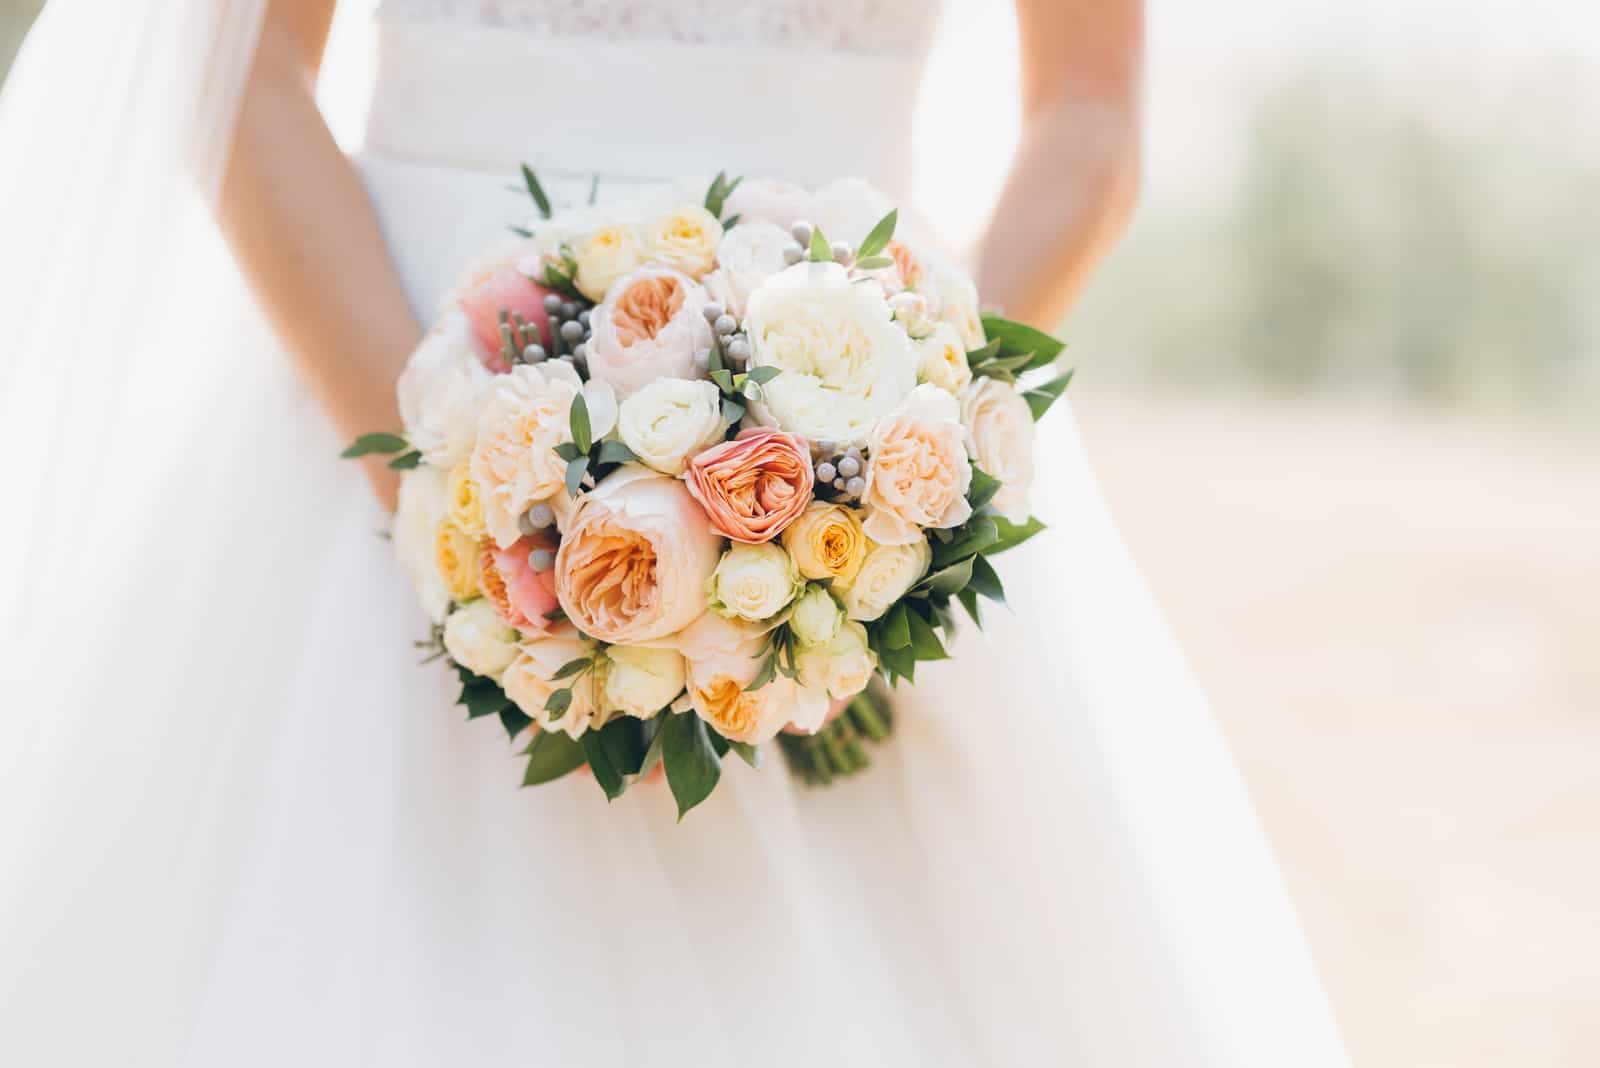 Hochzeitsblumen in den Händen der Braut